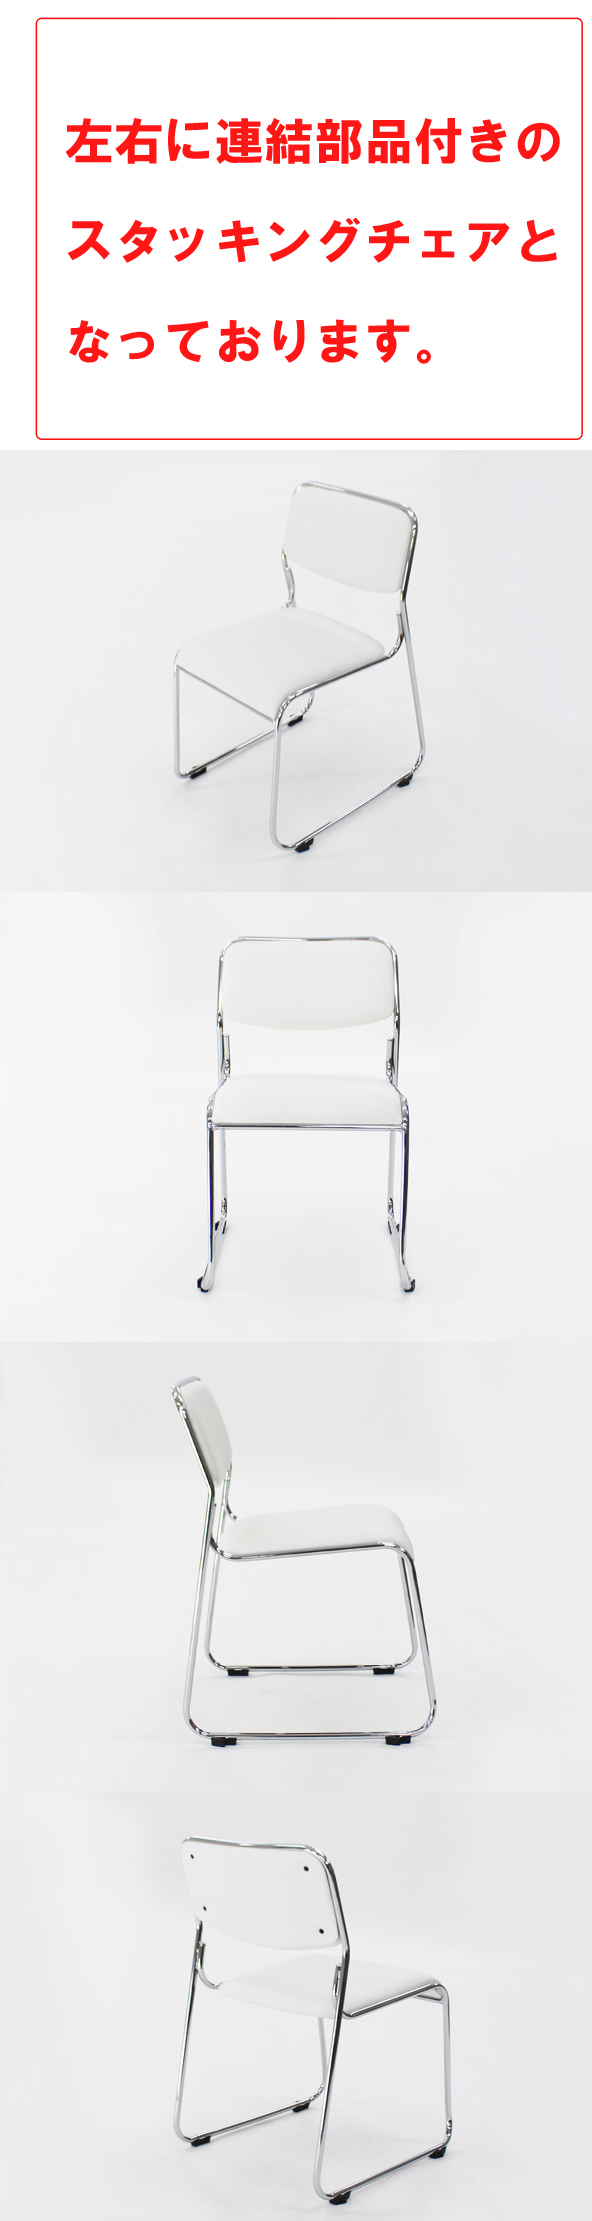 【廃盤商品】送料無料 連結可能 スタッキングチェア 6脚セット ホワイト ミーティングチェア パイプ椅子 会議イス 会議椅子 パイプチェア 横連結可能 パイプイス